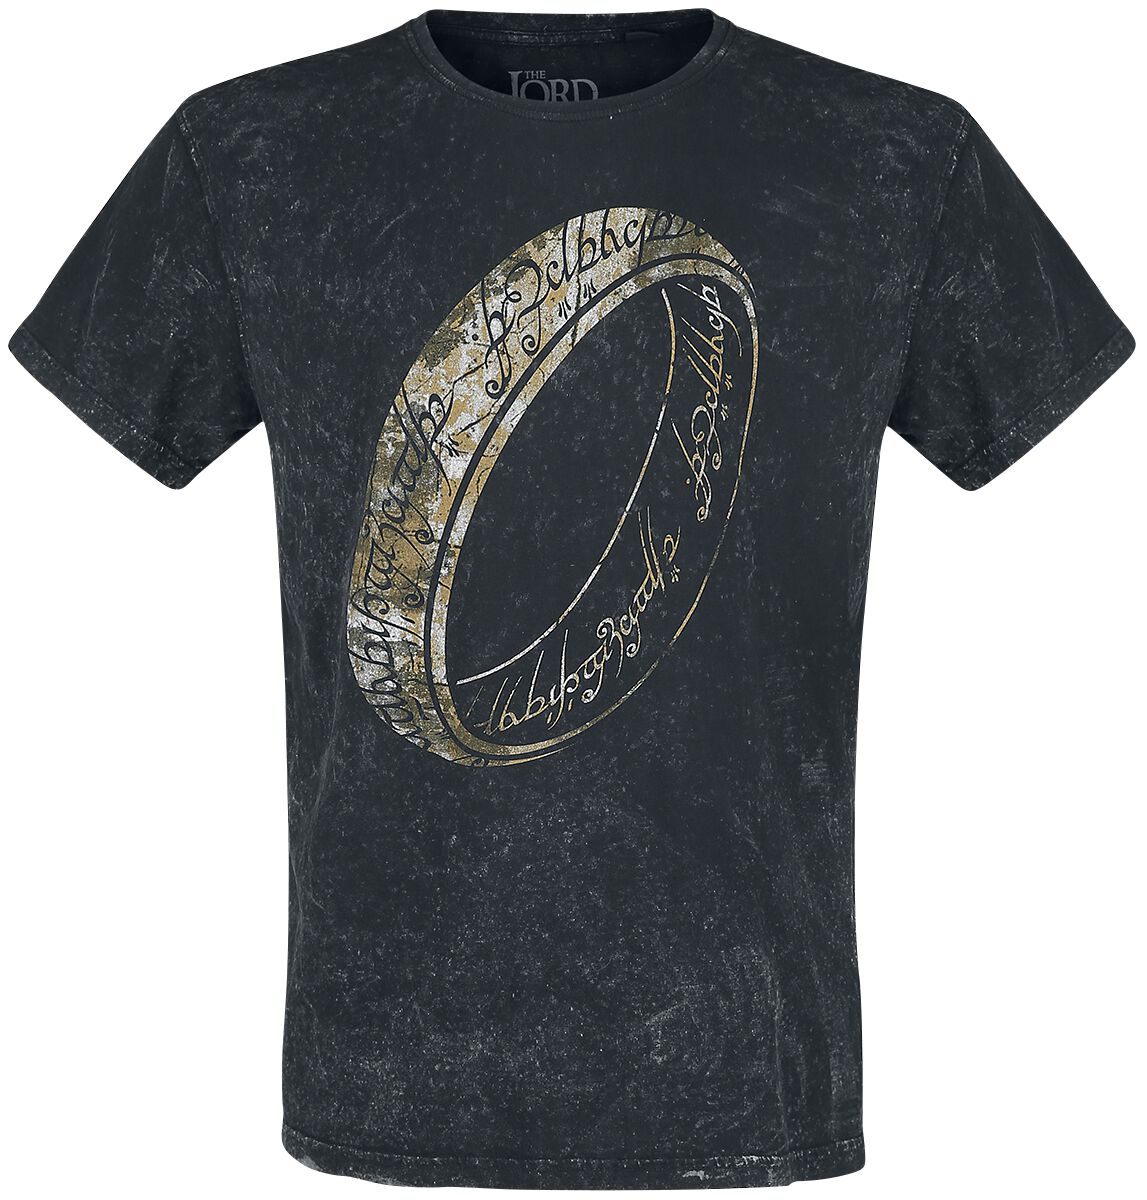 Der Herr der Ringe T-Shirt - One Ring To Rule Them All - M bis XXL - für Männer - Größe XXL - schwarz  - EMP exklusives Merchandise!